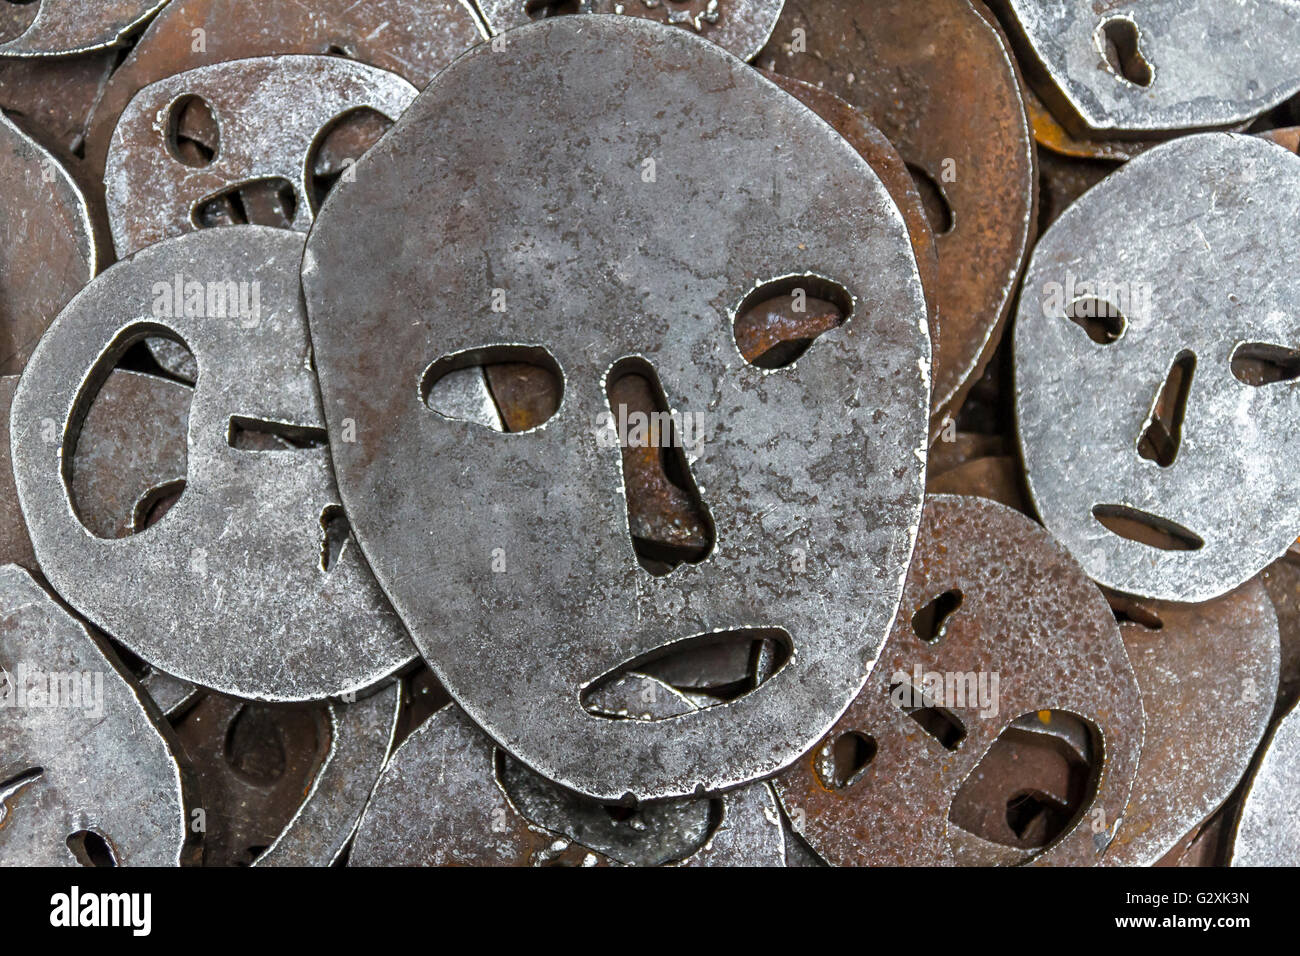 Shalekhet - les feuilles tombées, l'installation de faces de métal avec des bouches ouvertes, coupées à partir de lourdes plaques de fer rondes couvre le sol, dans le Musée juif de Berlin Banque D'Images